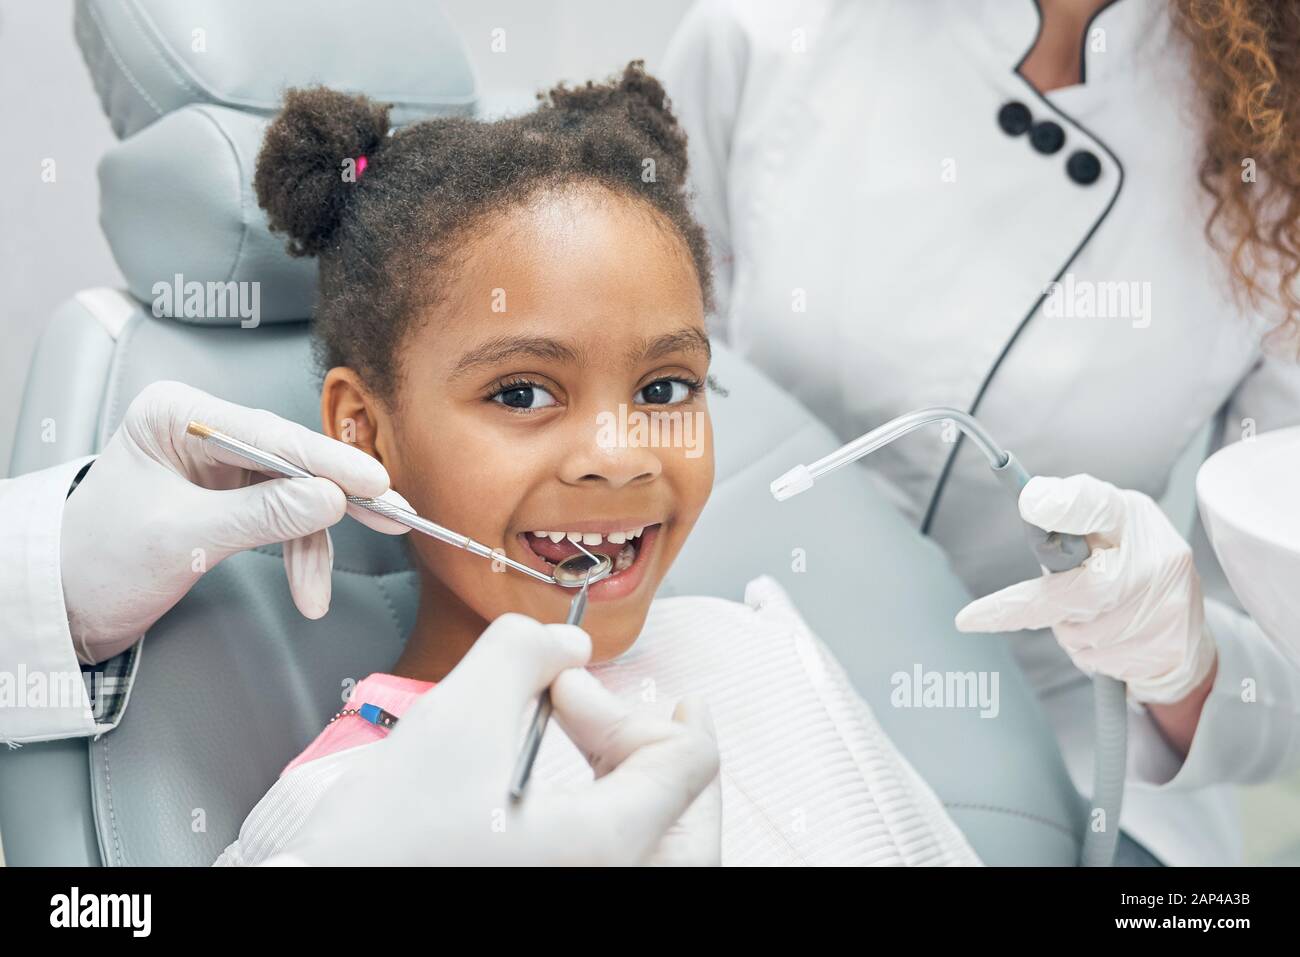 Glückliches afro-amerikanisches Mädchen, das im Stomatologenstuhl mit offenem Mund sitzt, während der professionelle Zahnarzt regelmäßig die Zähne mit einer Zahnsonde und einem Spiegel überprüft. Krankenschwester hilft. Stockfoto